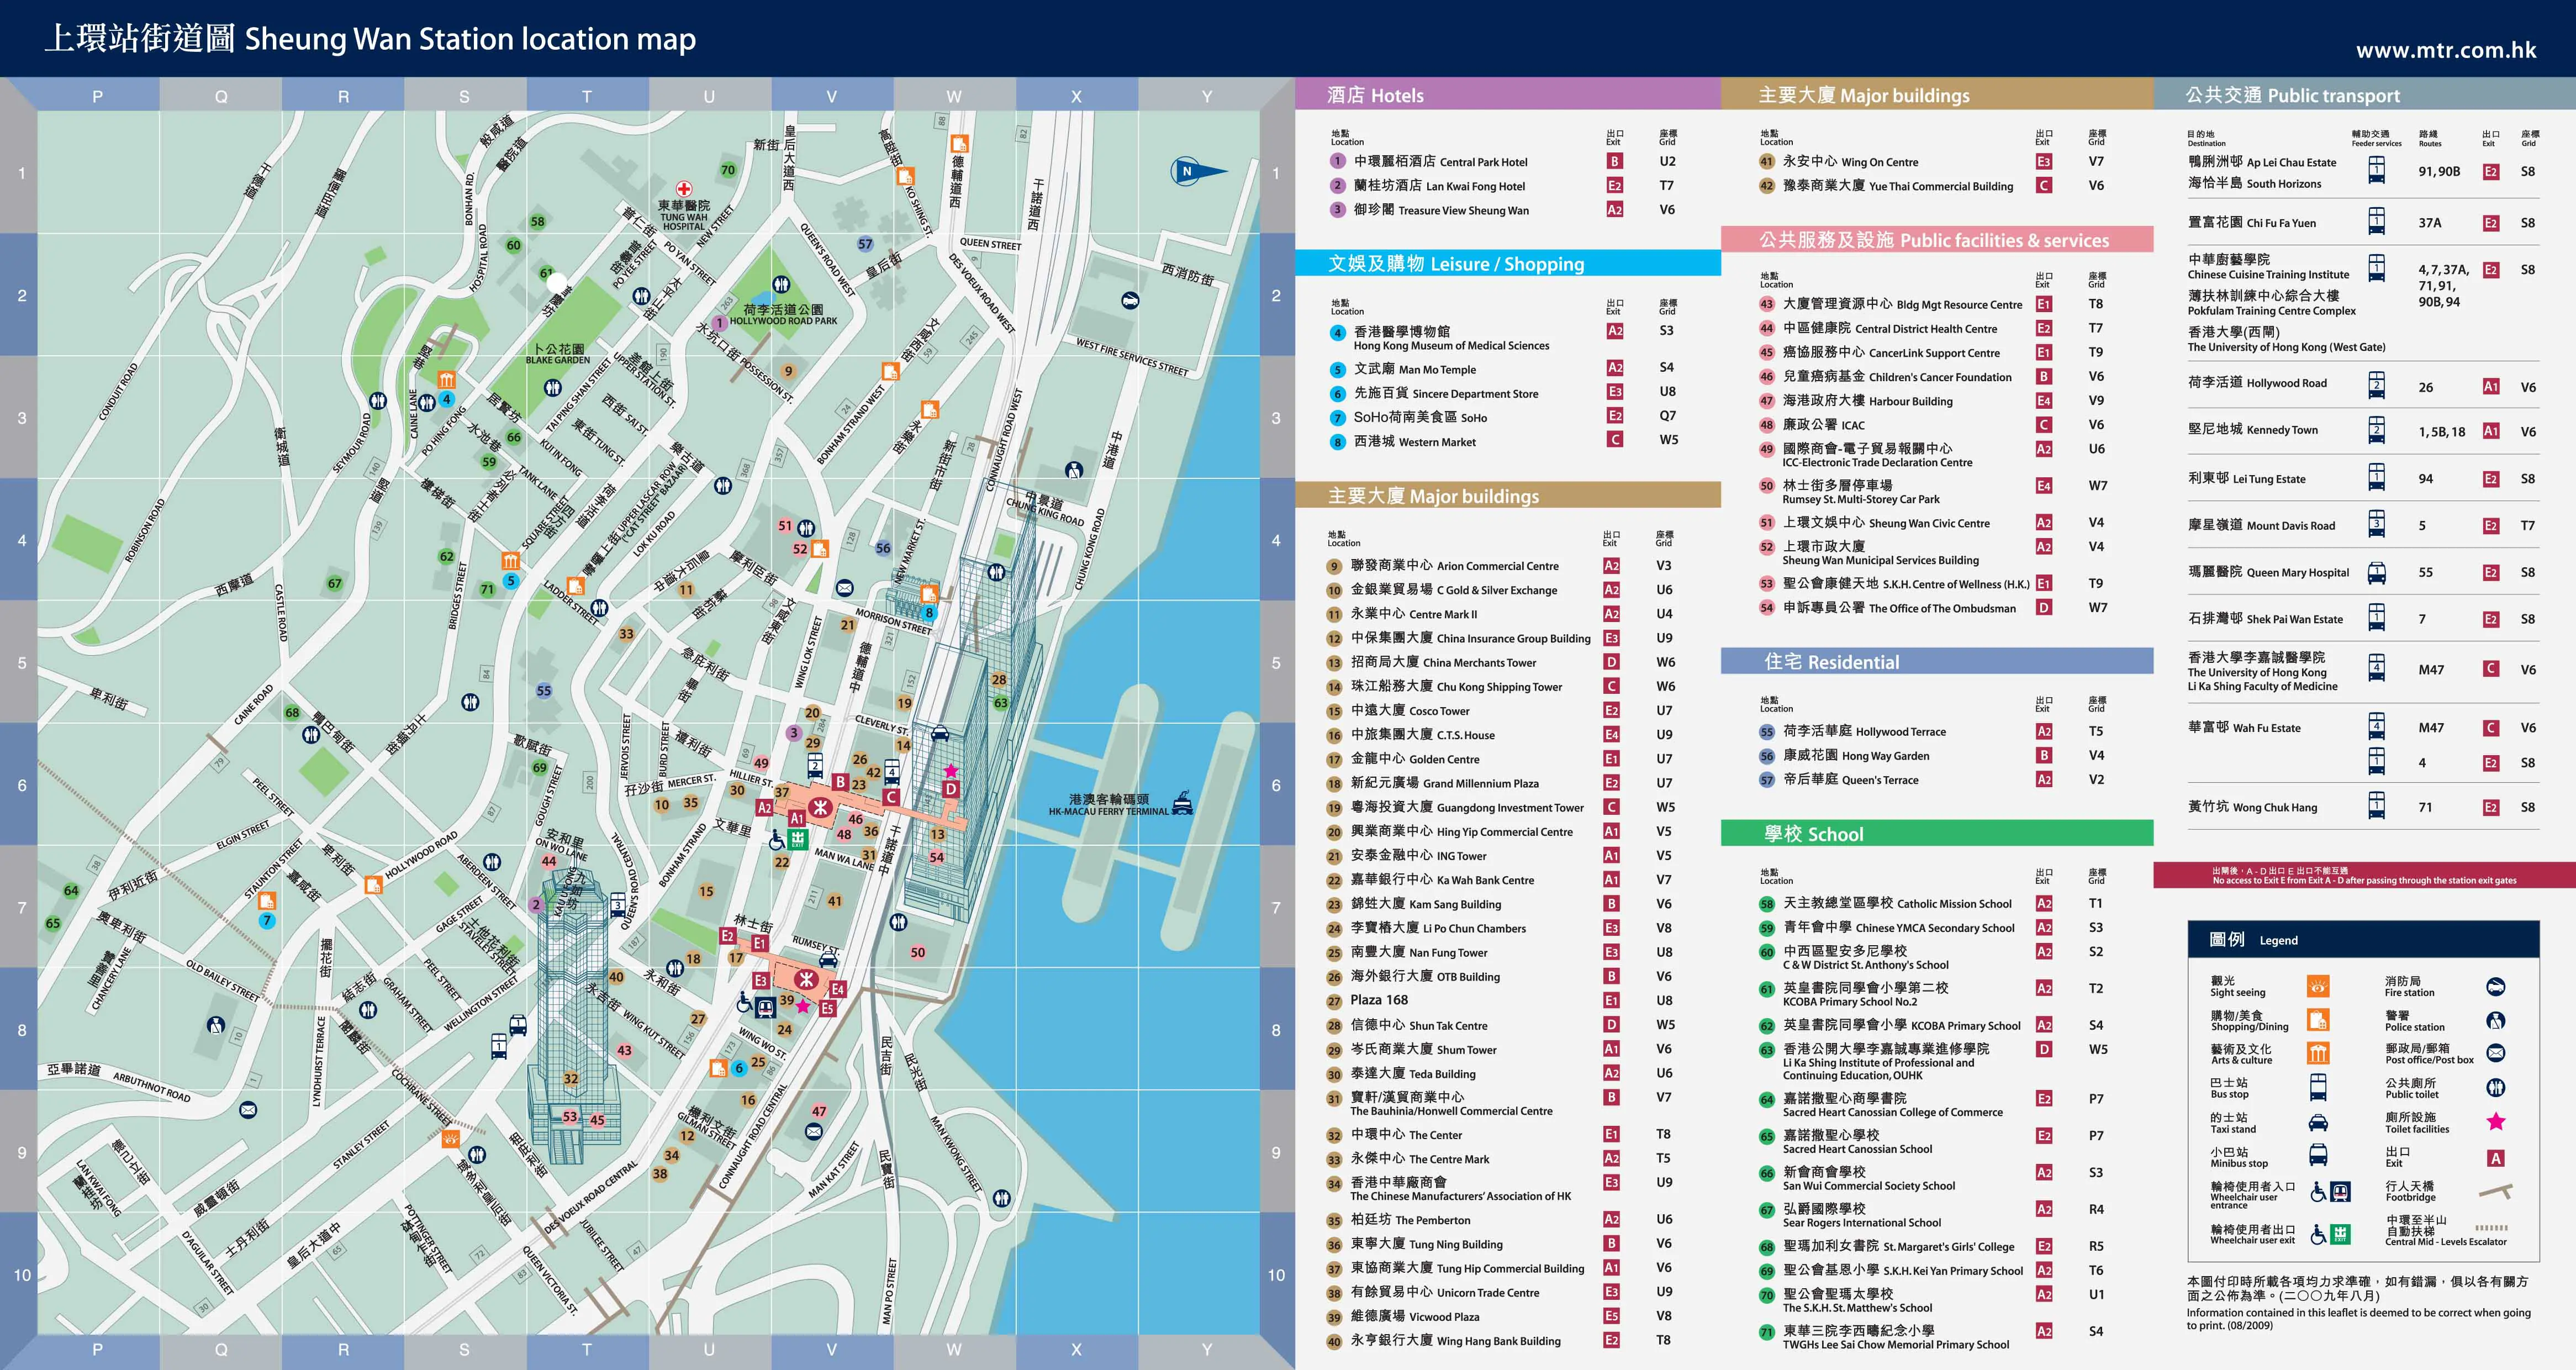 Hong Kong & Kowloon MTR Station Maps